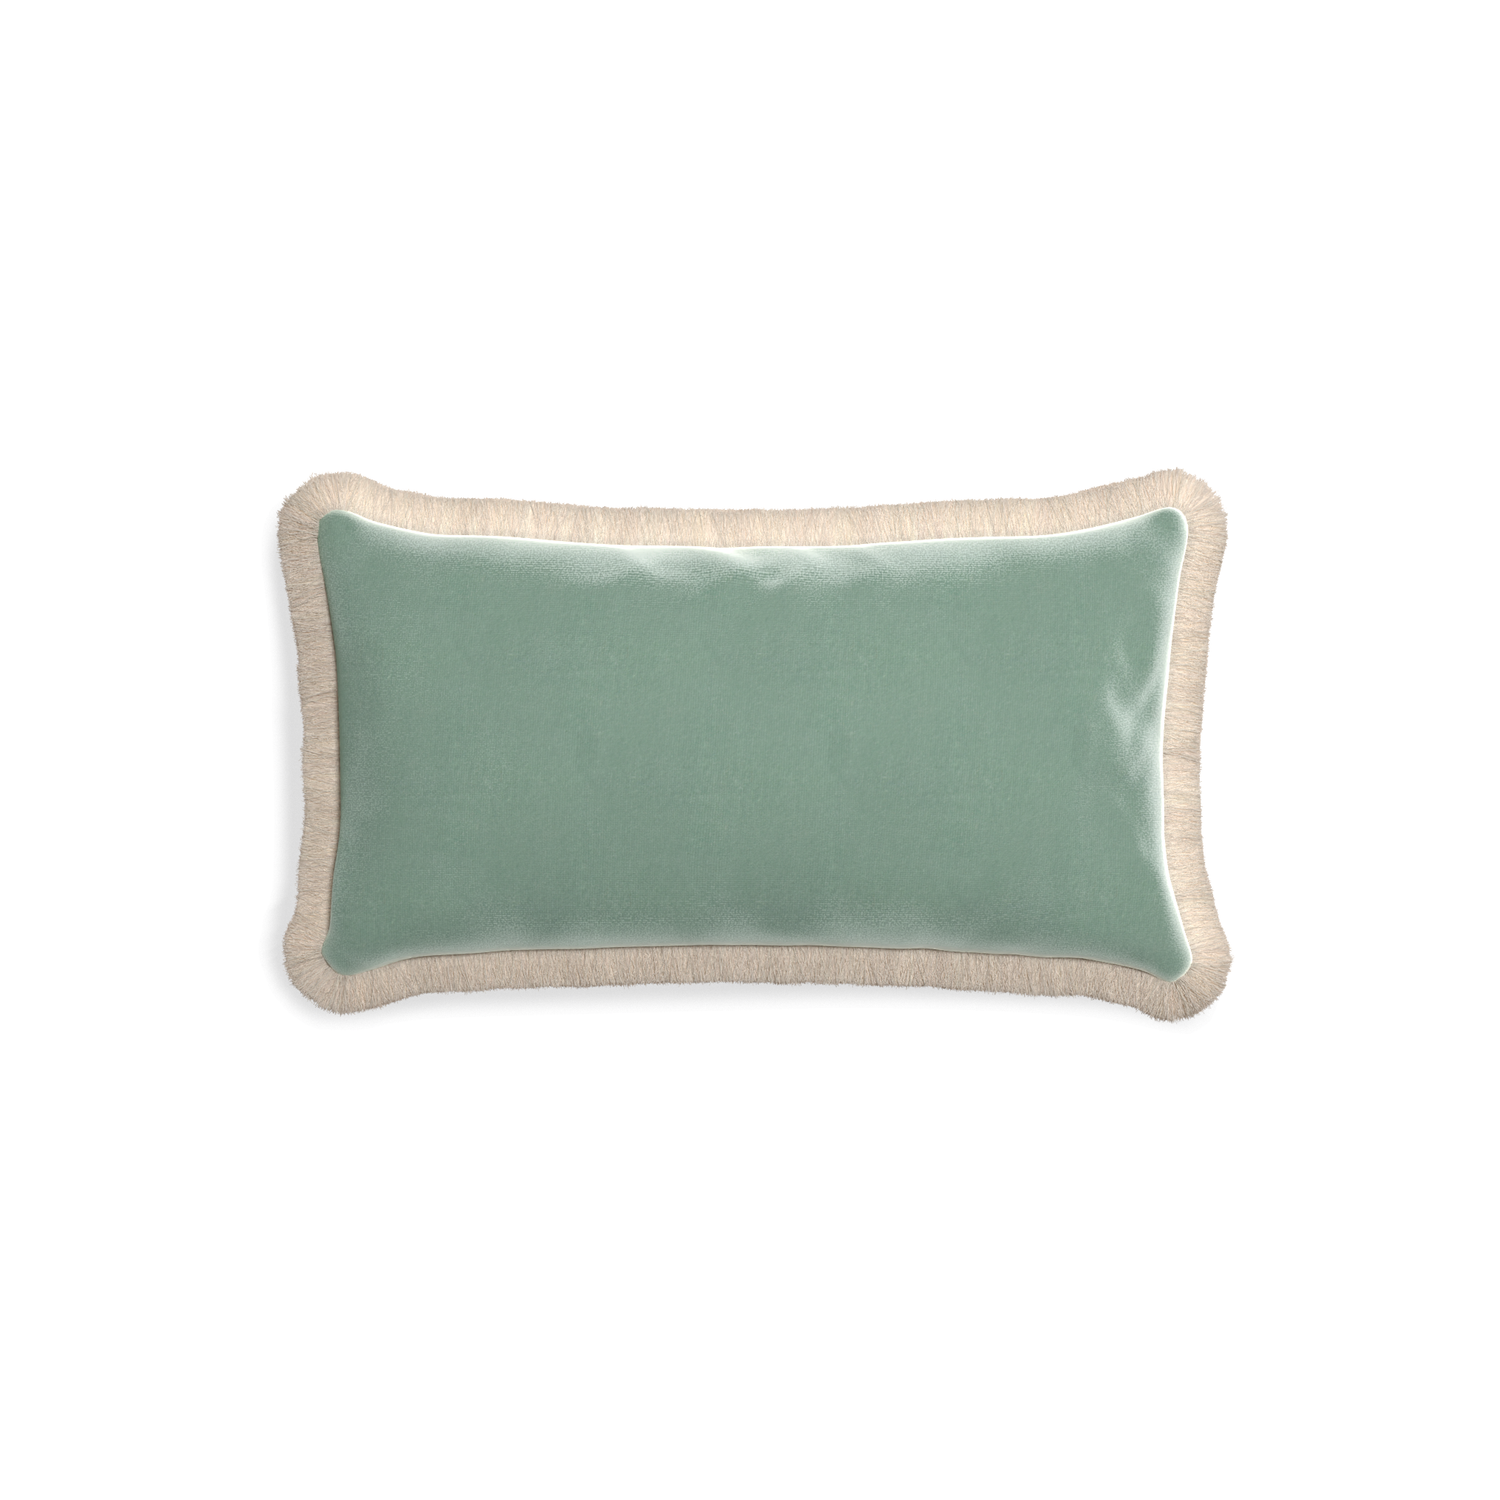 rectangle blue green velvet pillow with cream fringe